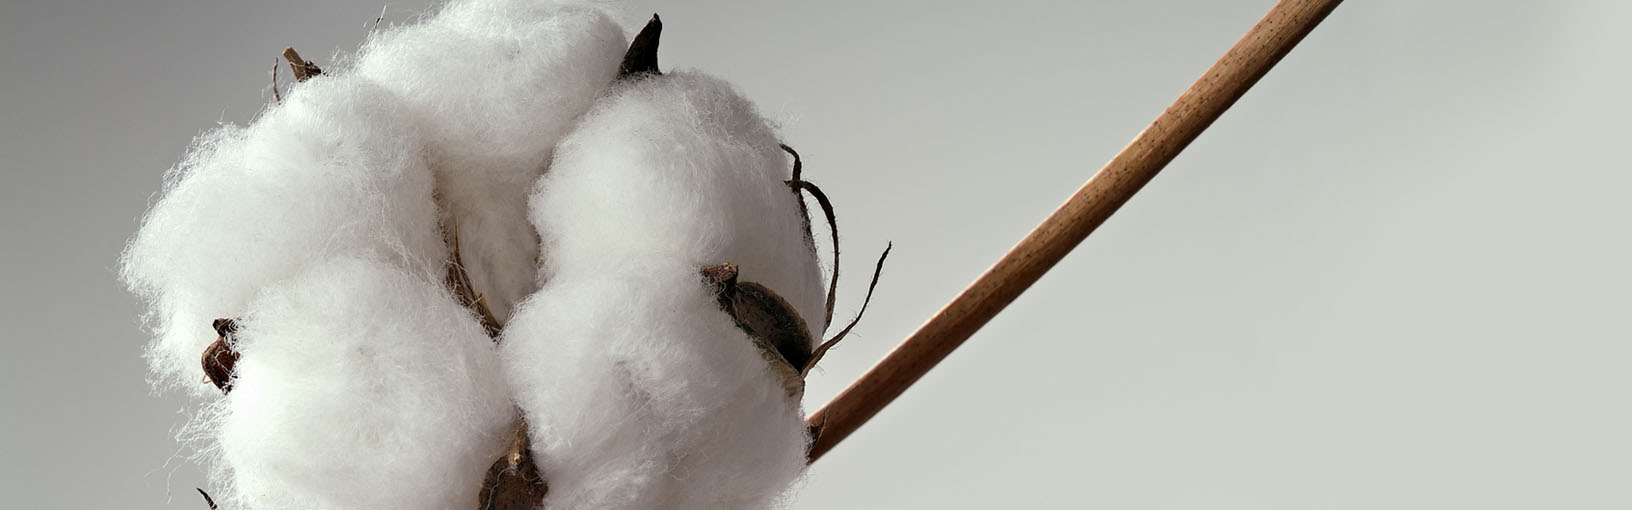 Garn af høj kvalitet til strikning, hækling og filtning LANA GROSSA<br> uld & garn